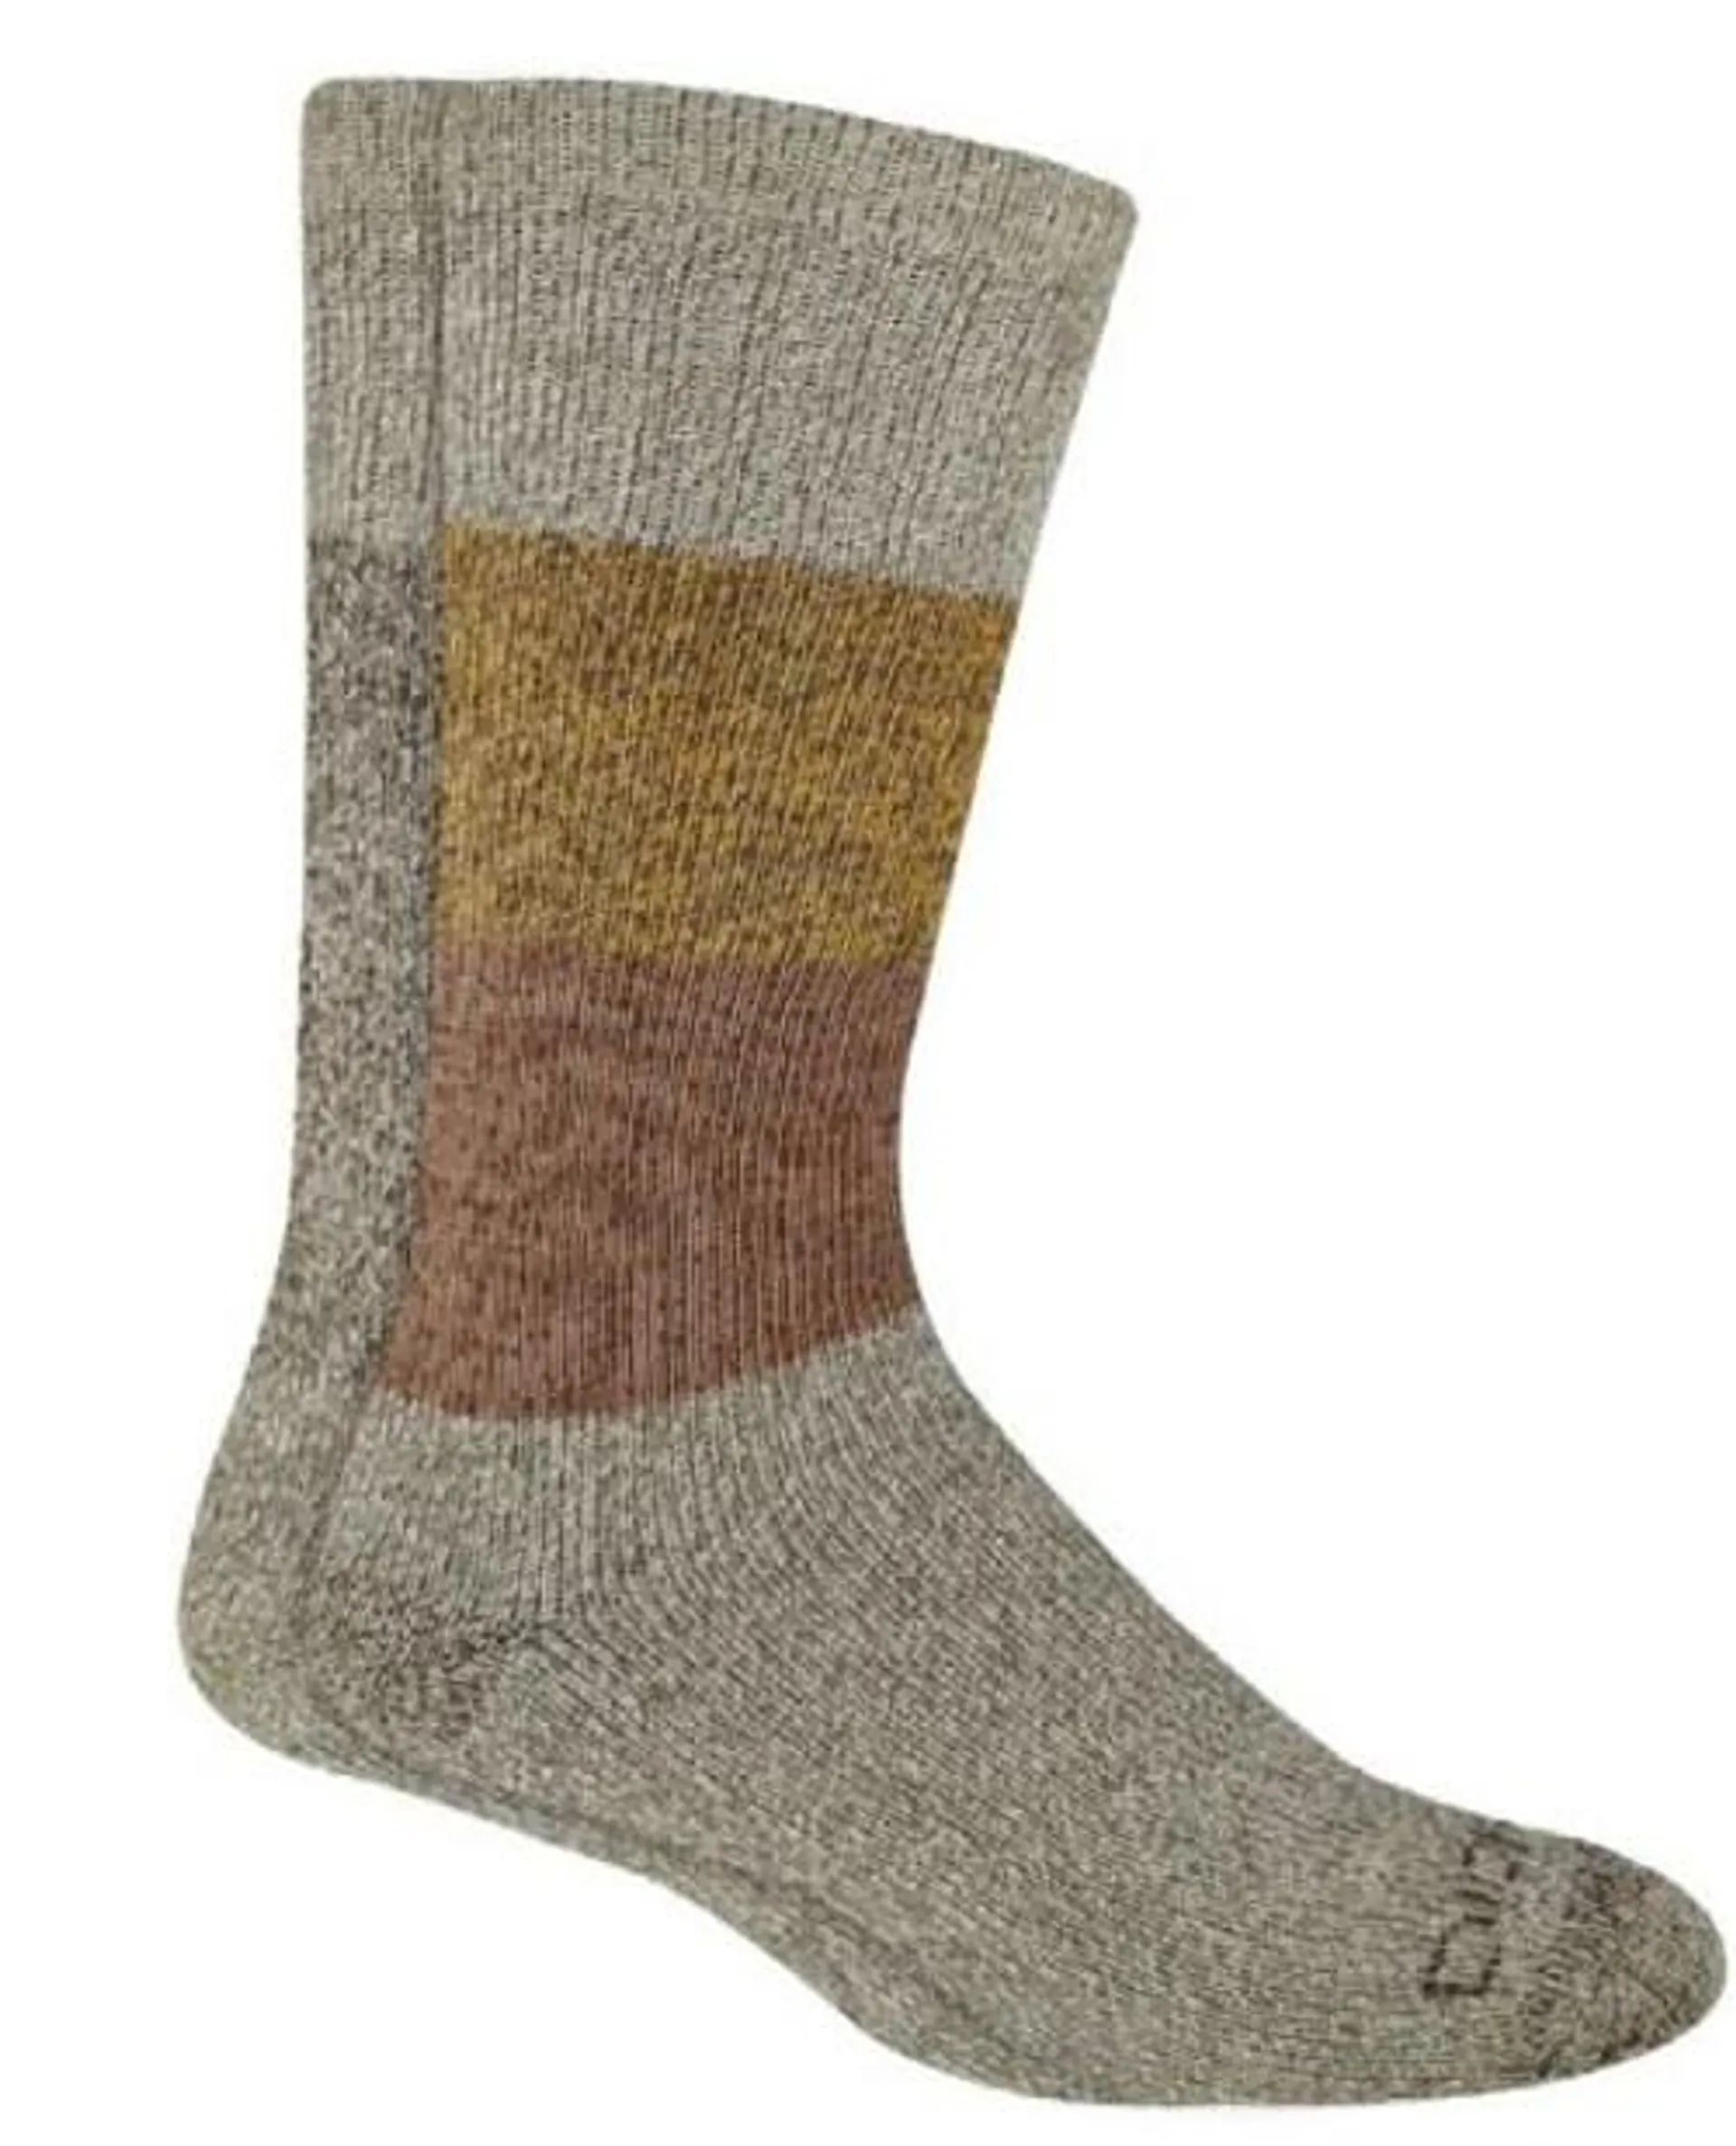 Dickies Men's Khaki Pattern Charcoal Brushed Thermal Crew Socks - Assorted, 2 Pk